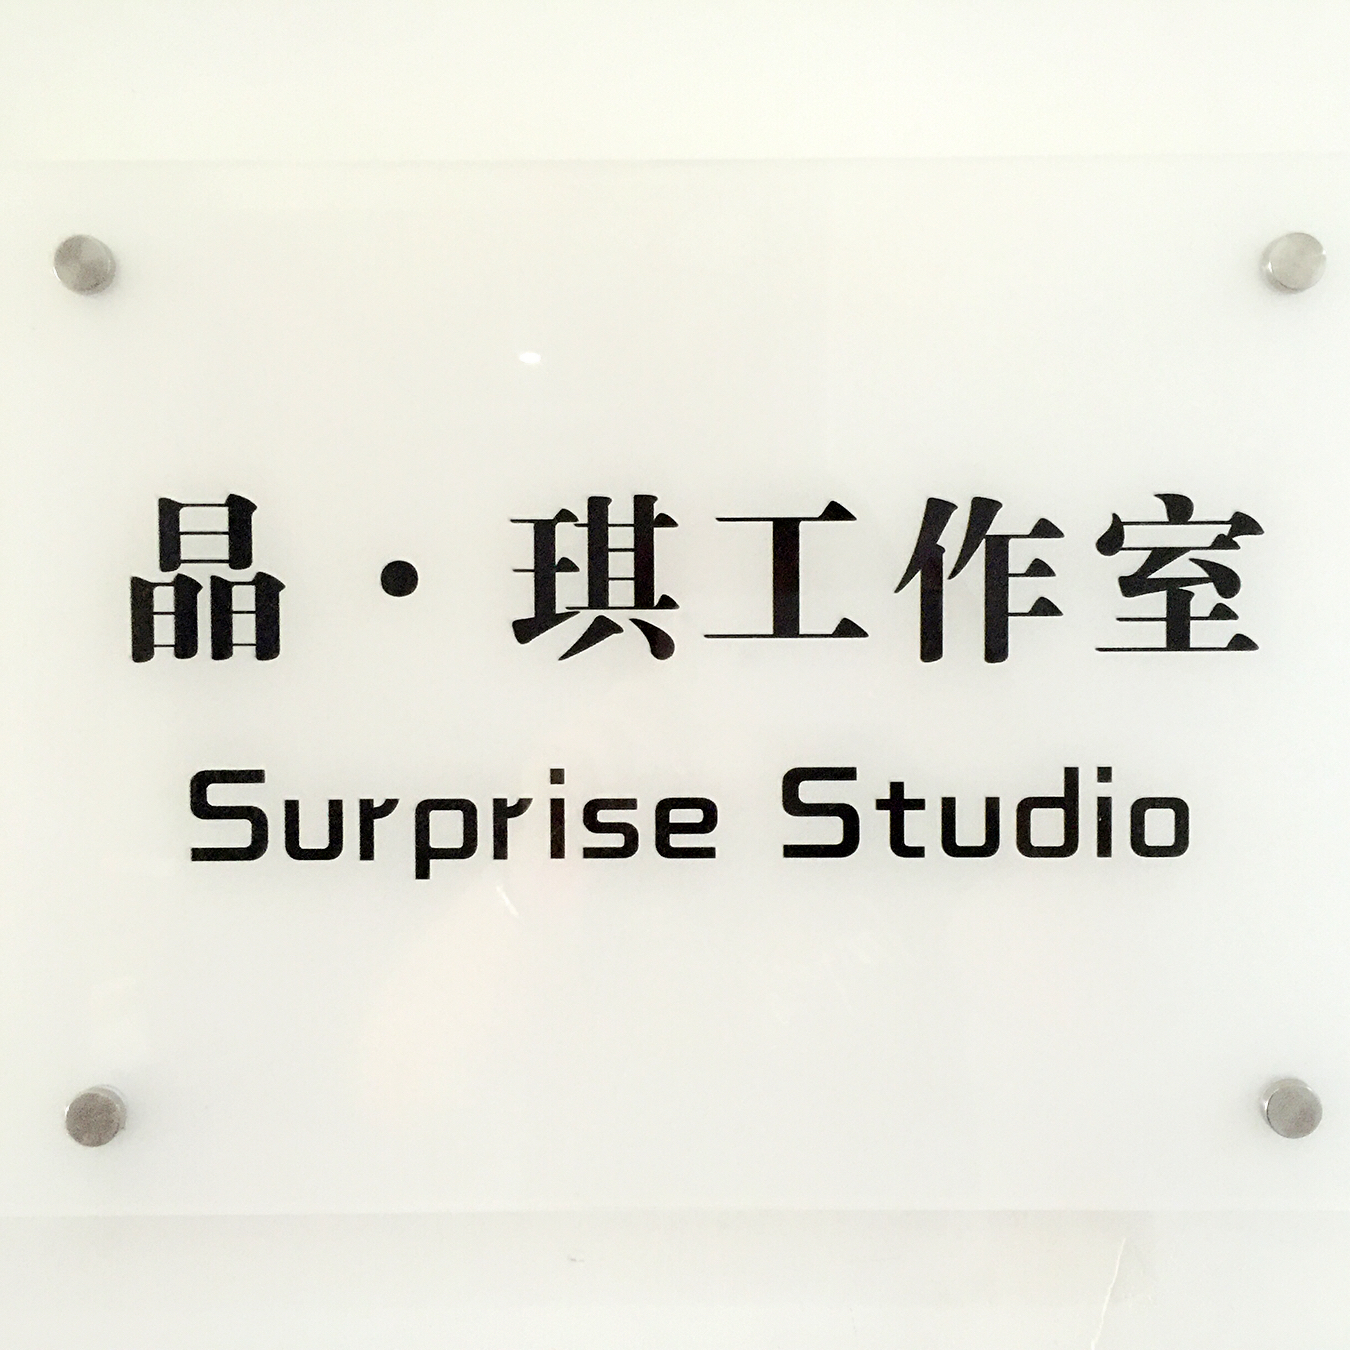 Surprise Studio